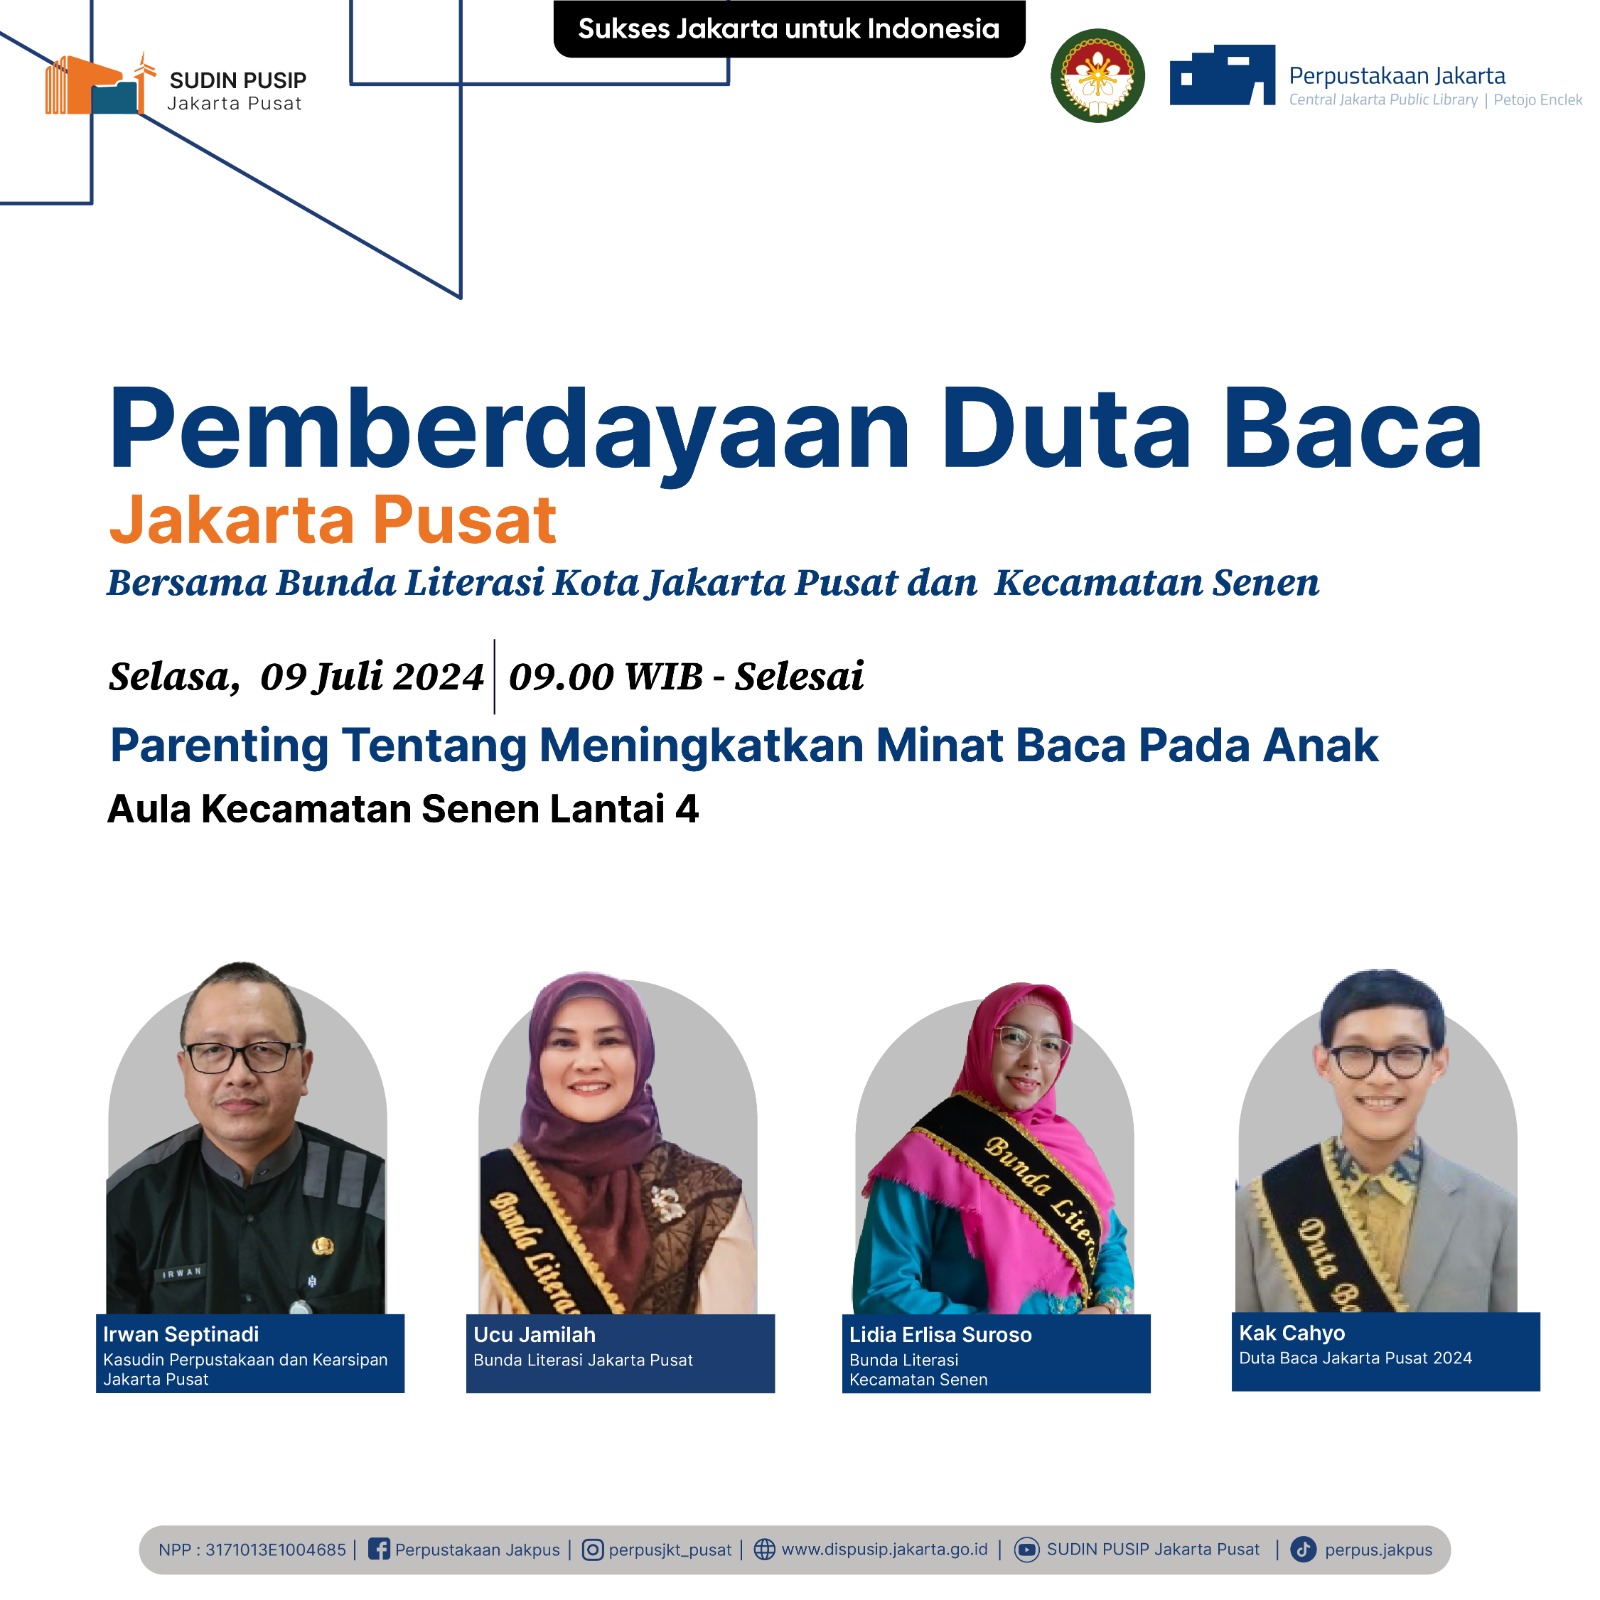 Pemberdayaan Duta Baca Jakarta Pusat Bersama Bunda Literasi Kota Jakarta Pusat Dan Kecamatan Senen